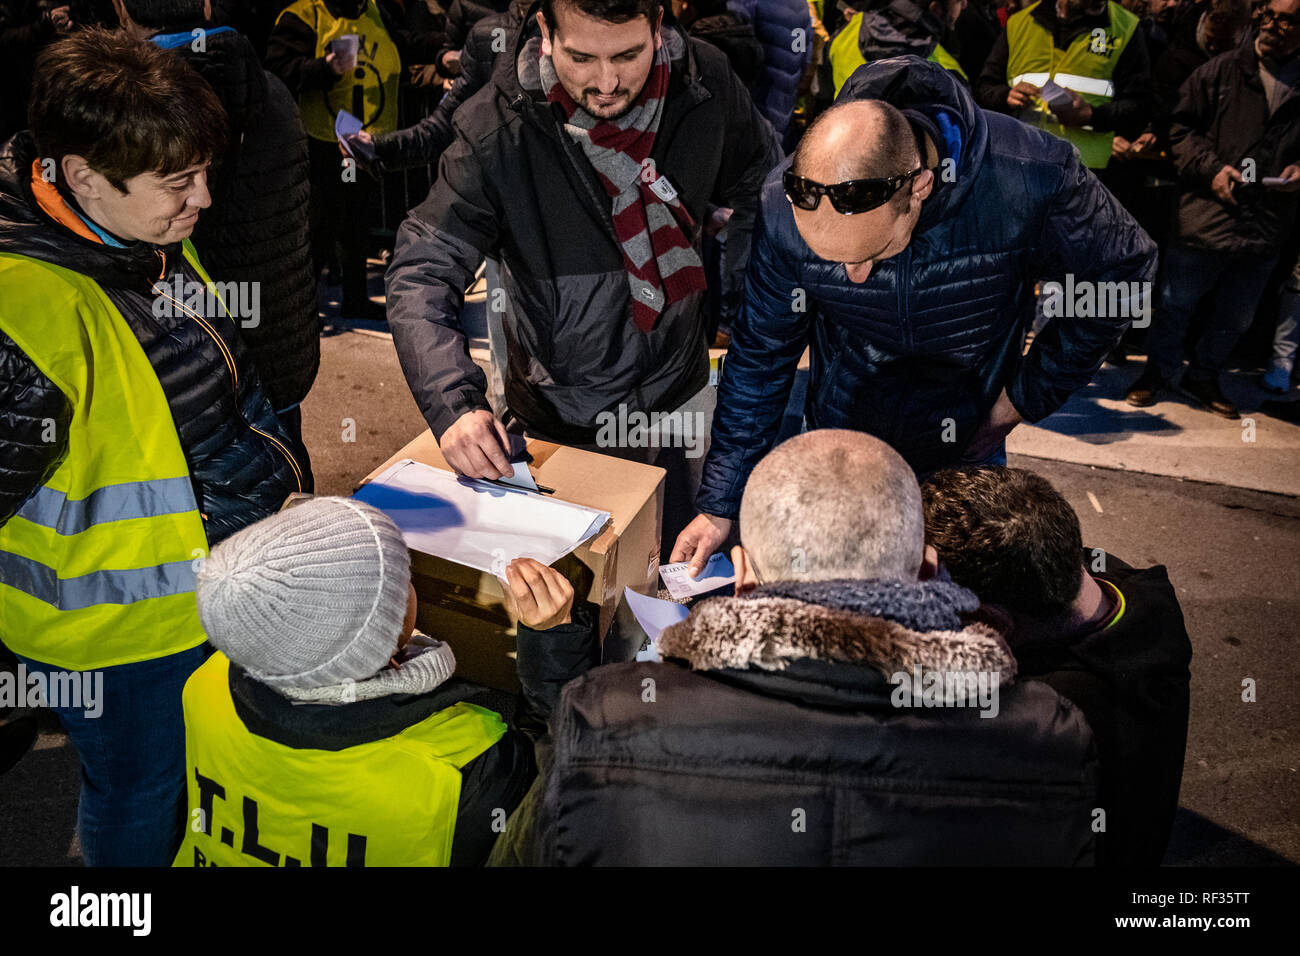 Ein Taxi Fahrer gesehen die Ausübung seines Rechts an einem der Tische zu stimmen. Die Abstimmung hat begonnen. Hunderte Taxifahrer besetzen die Plaza Catalunya warten auf die Wende zu stimmen, wenn sie den Streik fortsetzen oder die neue Gesetzesverordnung vorgelegt, die von der Regierung von Katalonien akzeptieren. Stockfoto